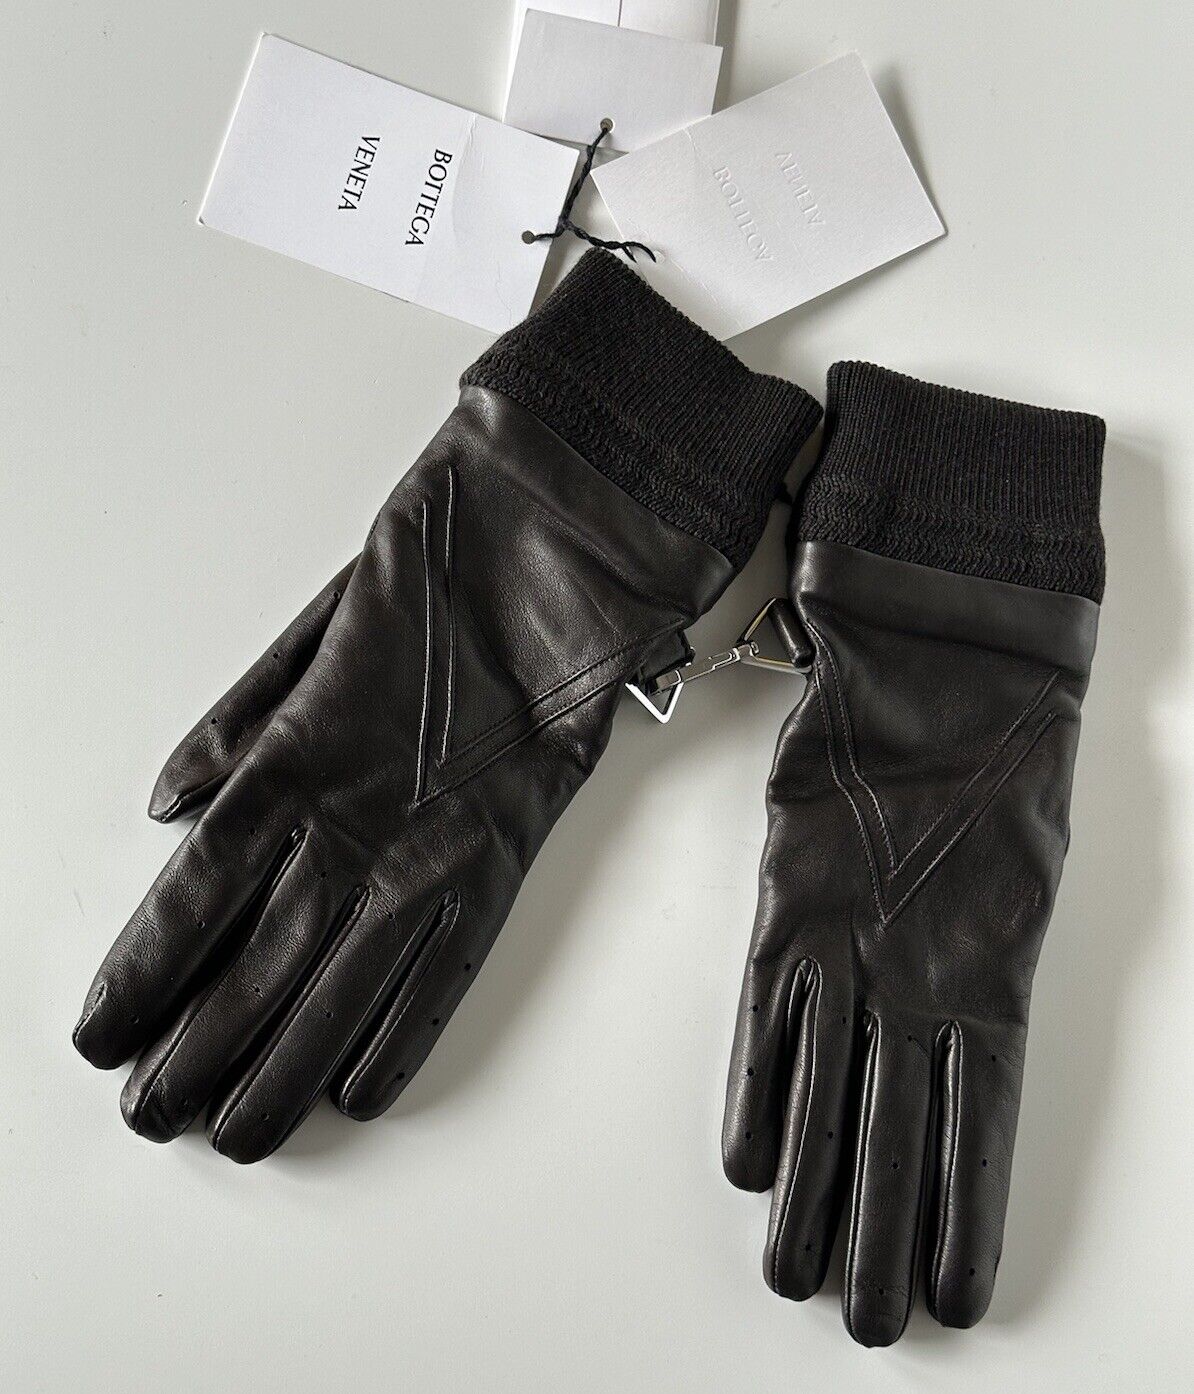 СЗТ $650 Женские кожаные перчатки Bottega Veneta Коричневые, размер 8 (L), Италия 690300 